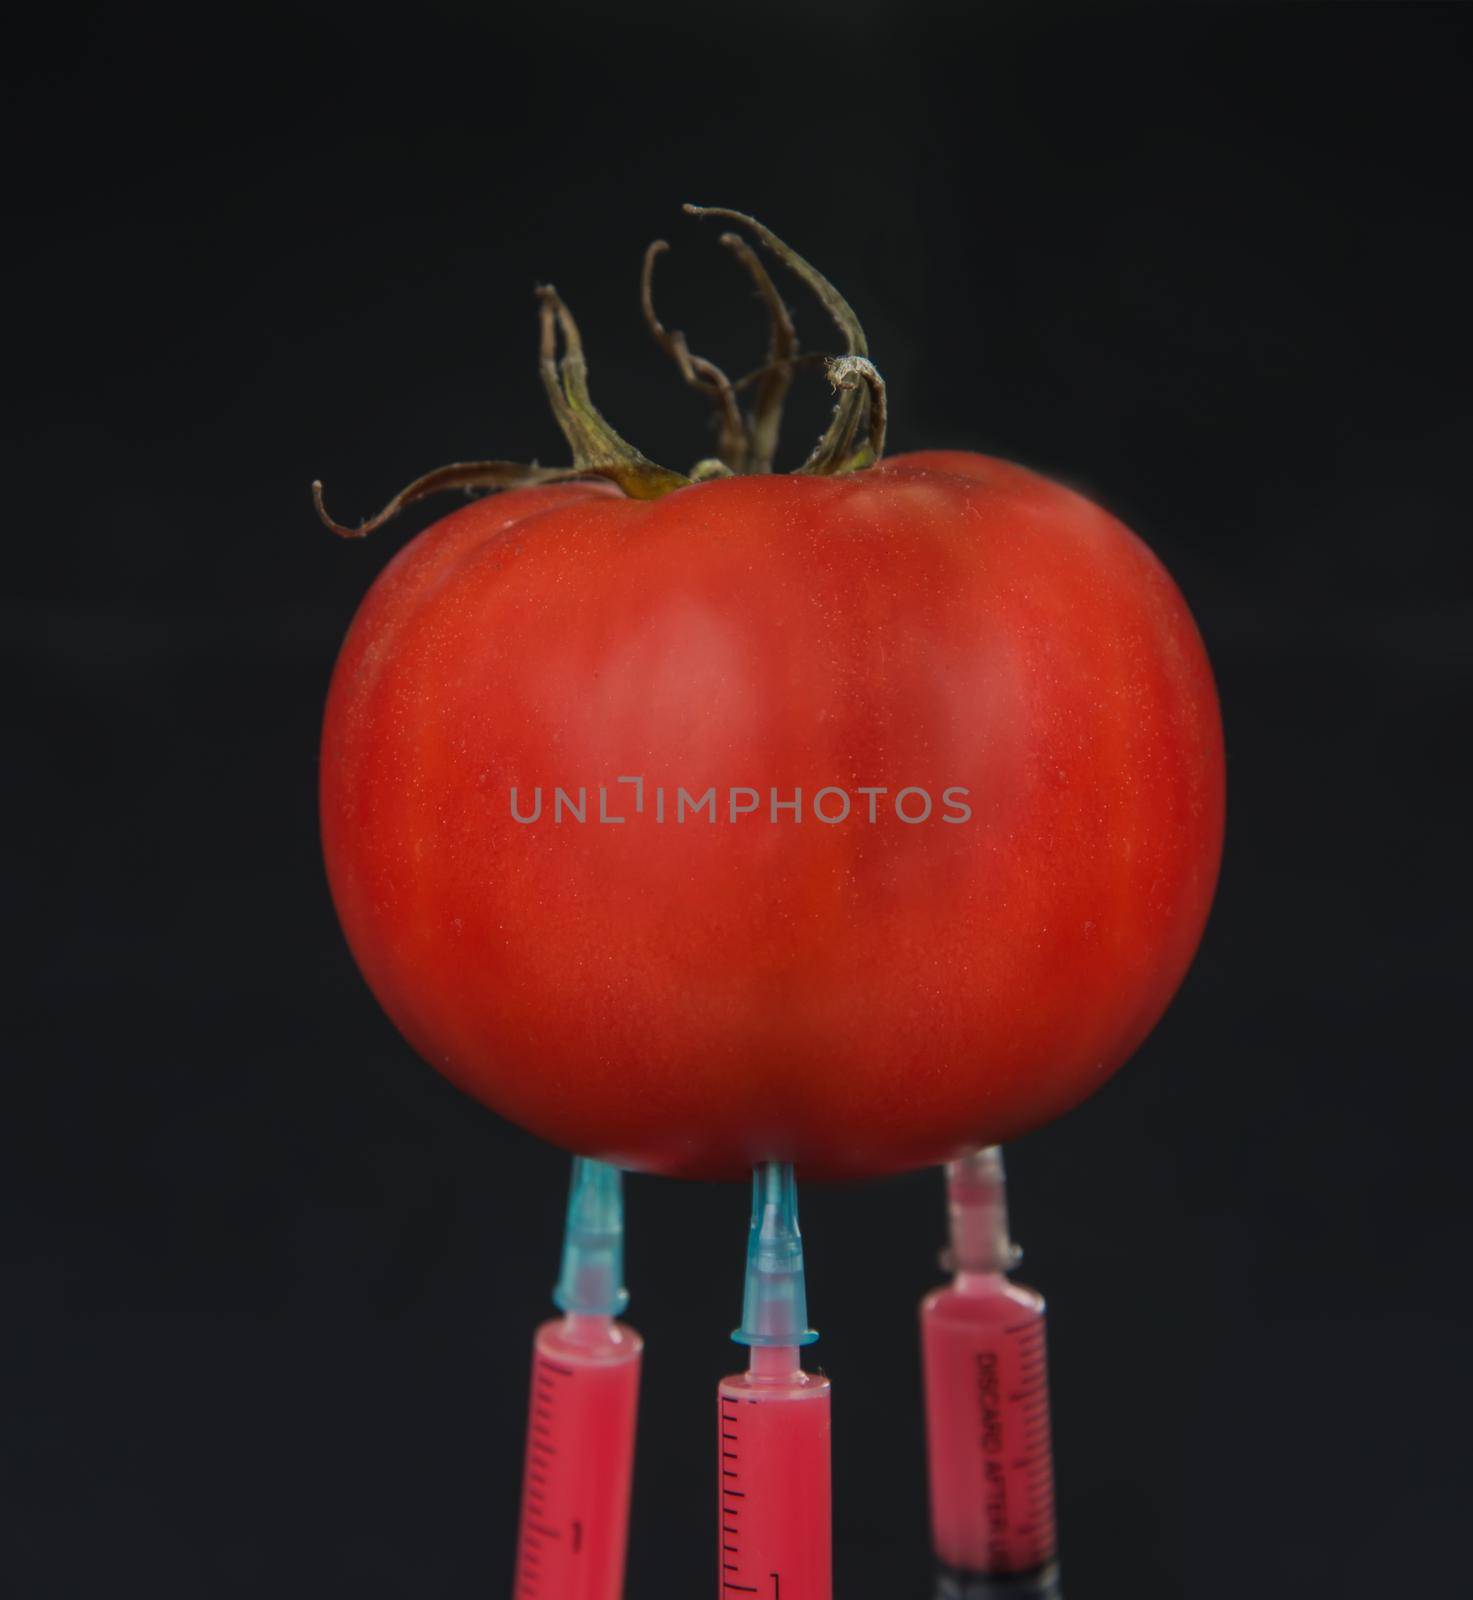 Tomato and syringe by alexAleksei